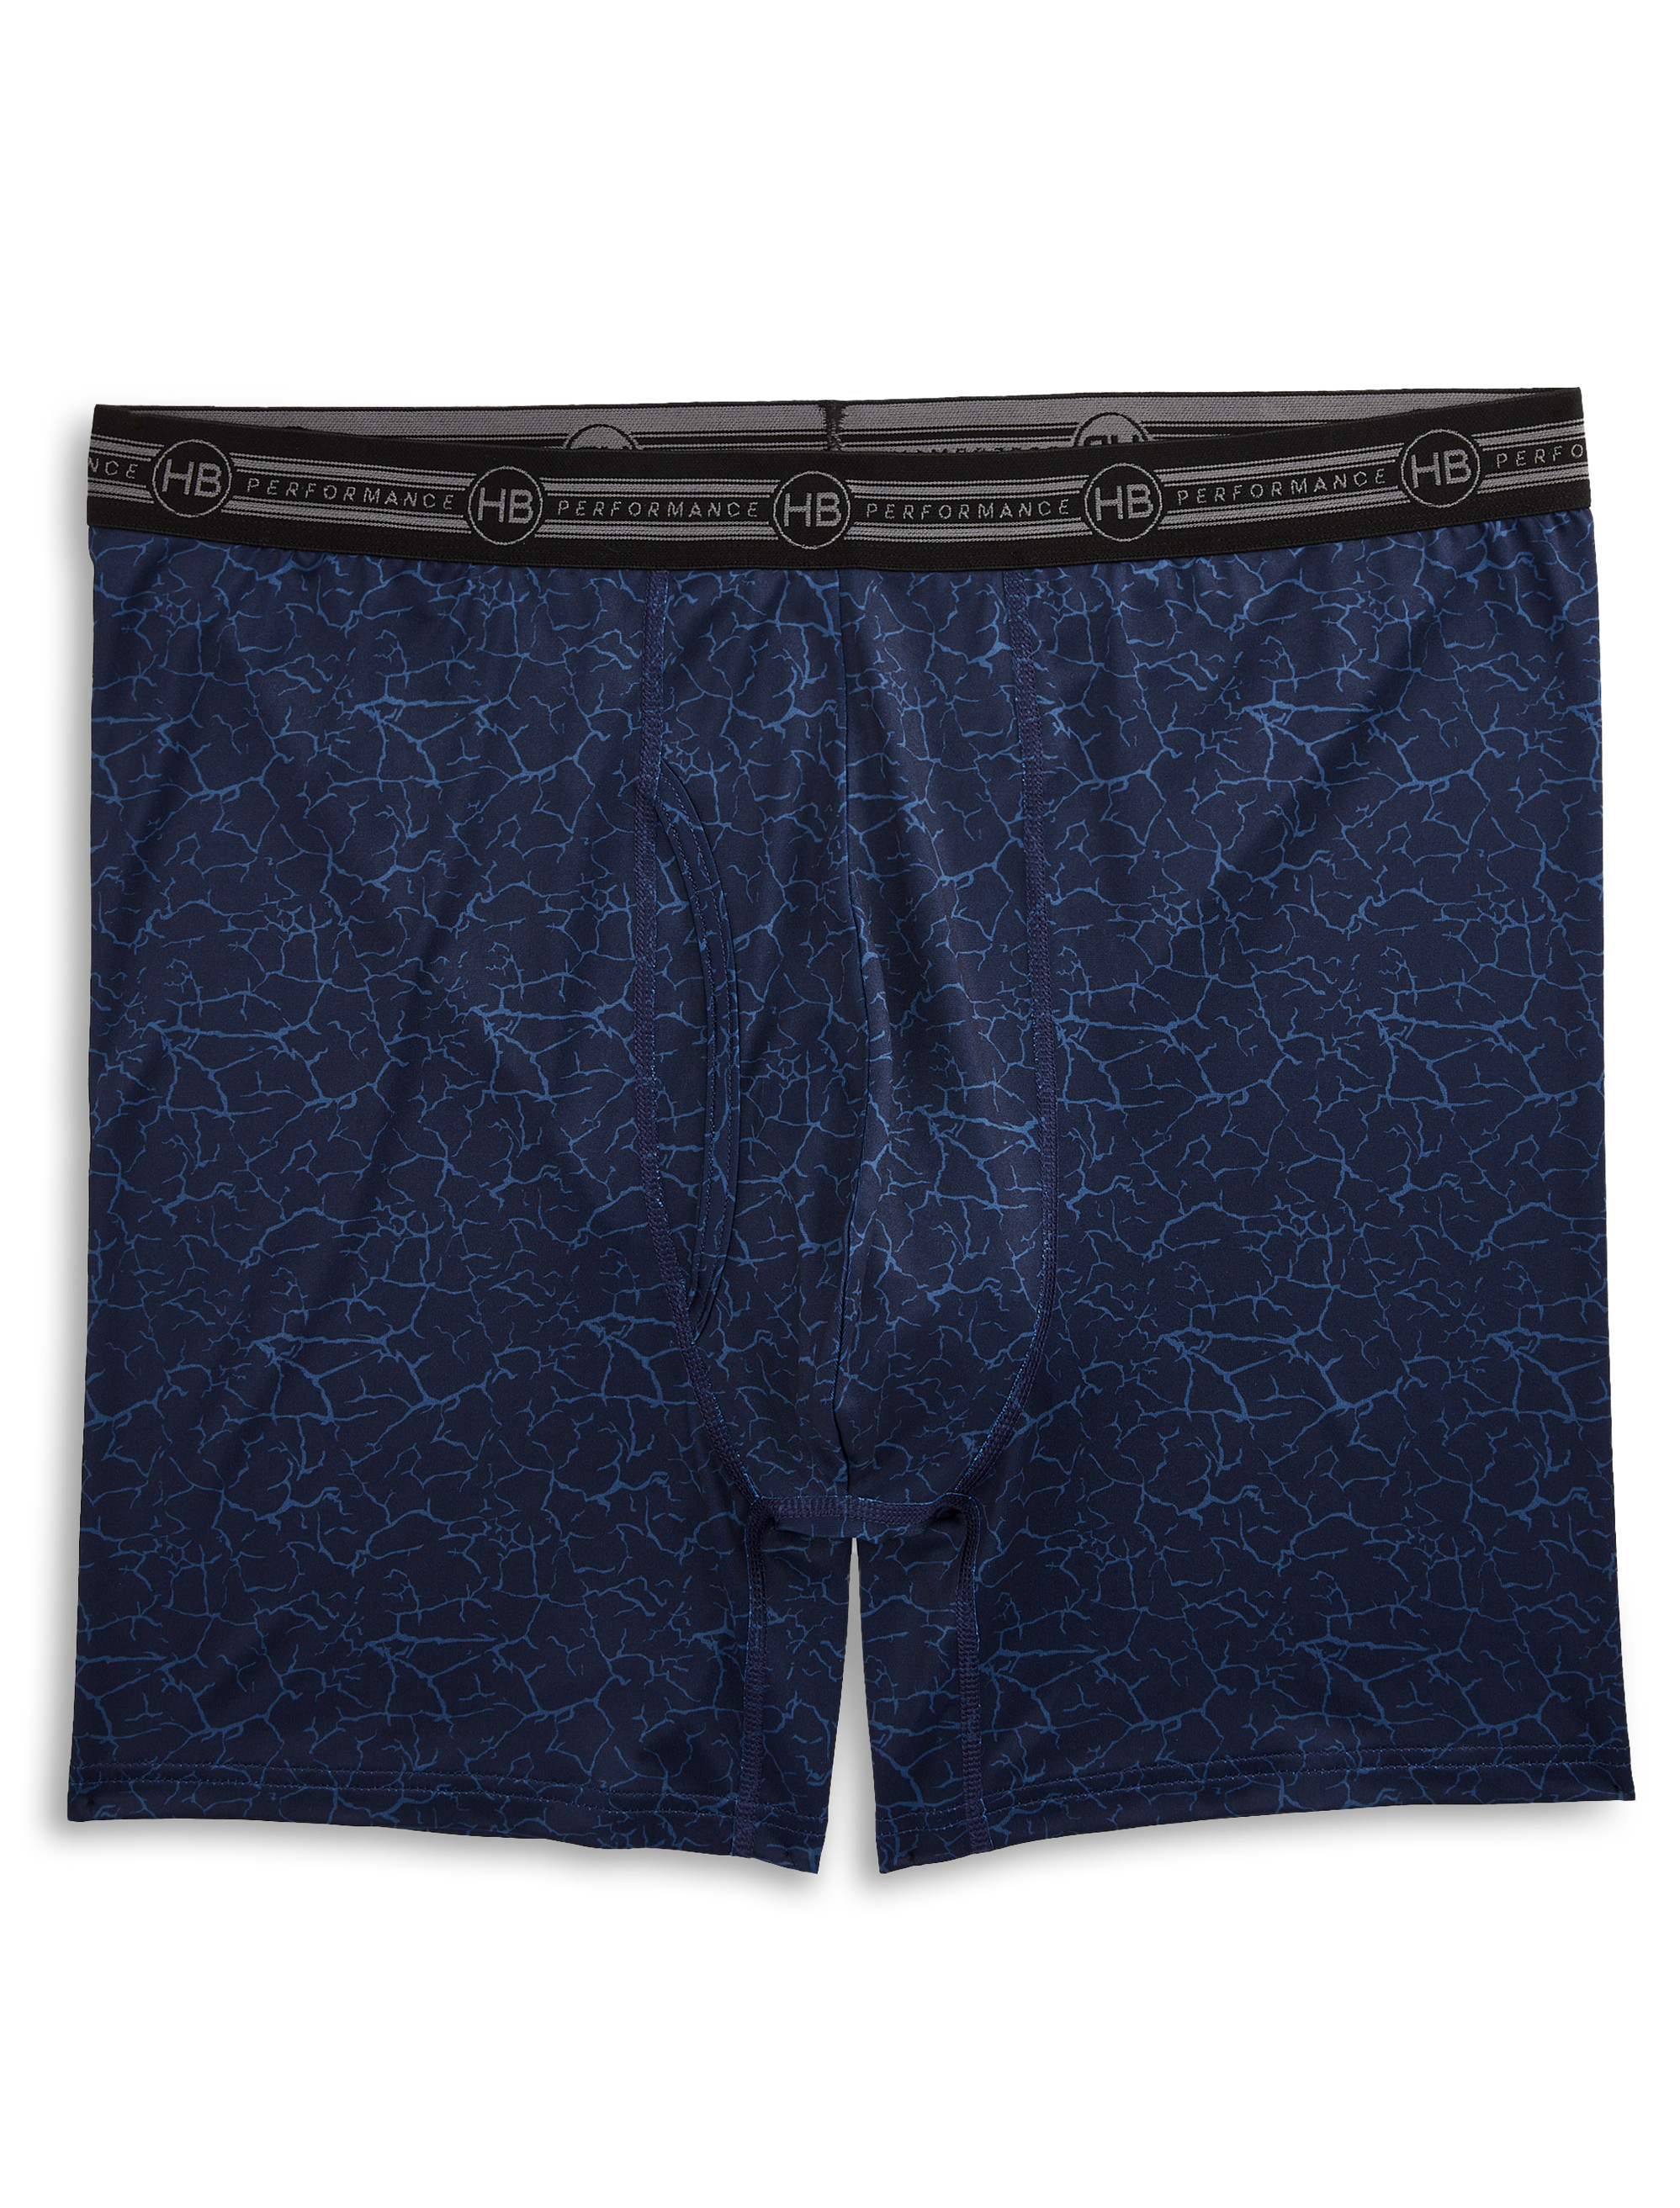 Reebok Performance Underwear Boxer Briefs - Small - Navy Blue